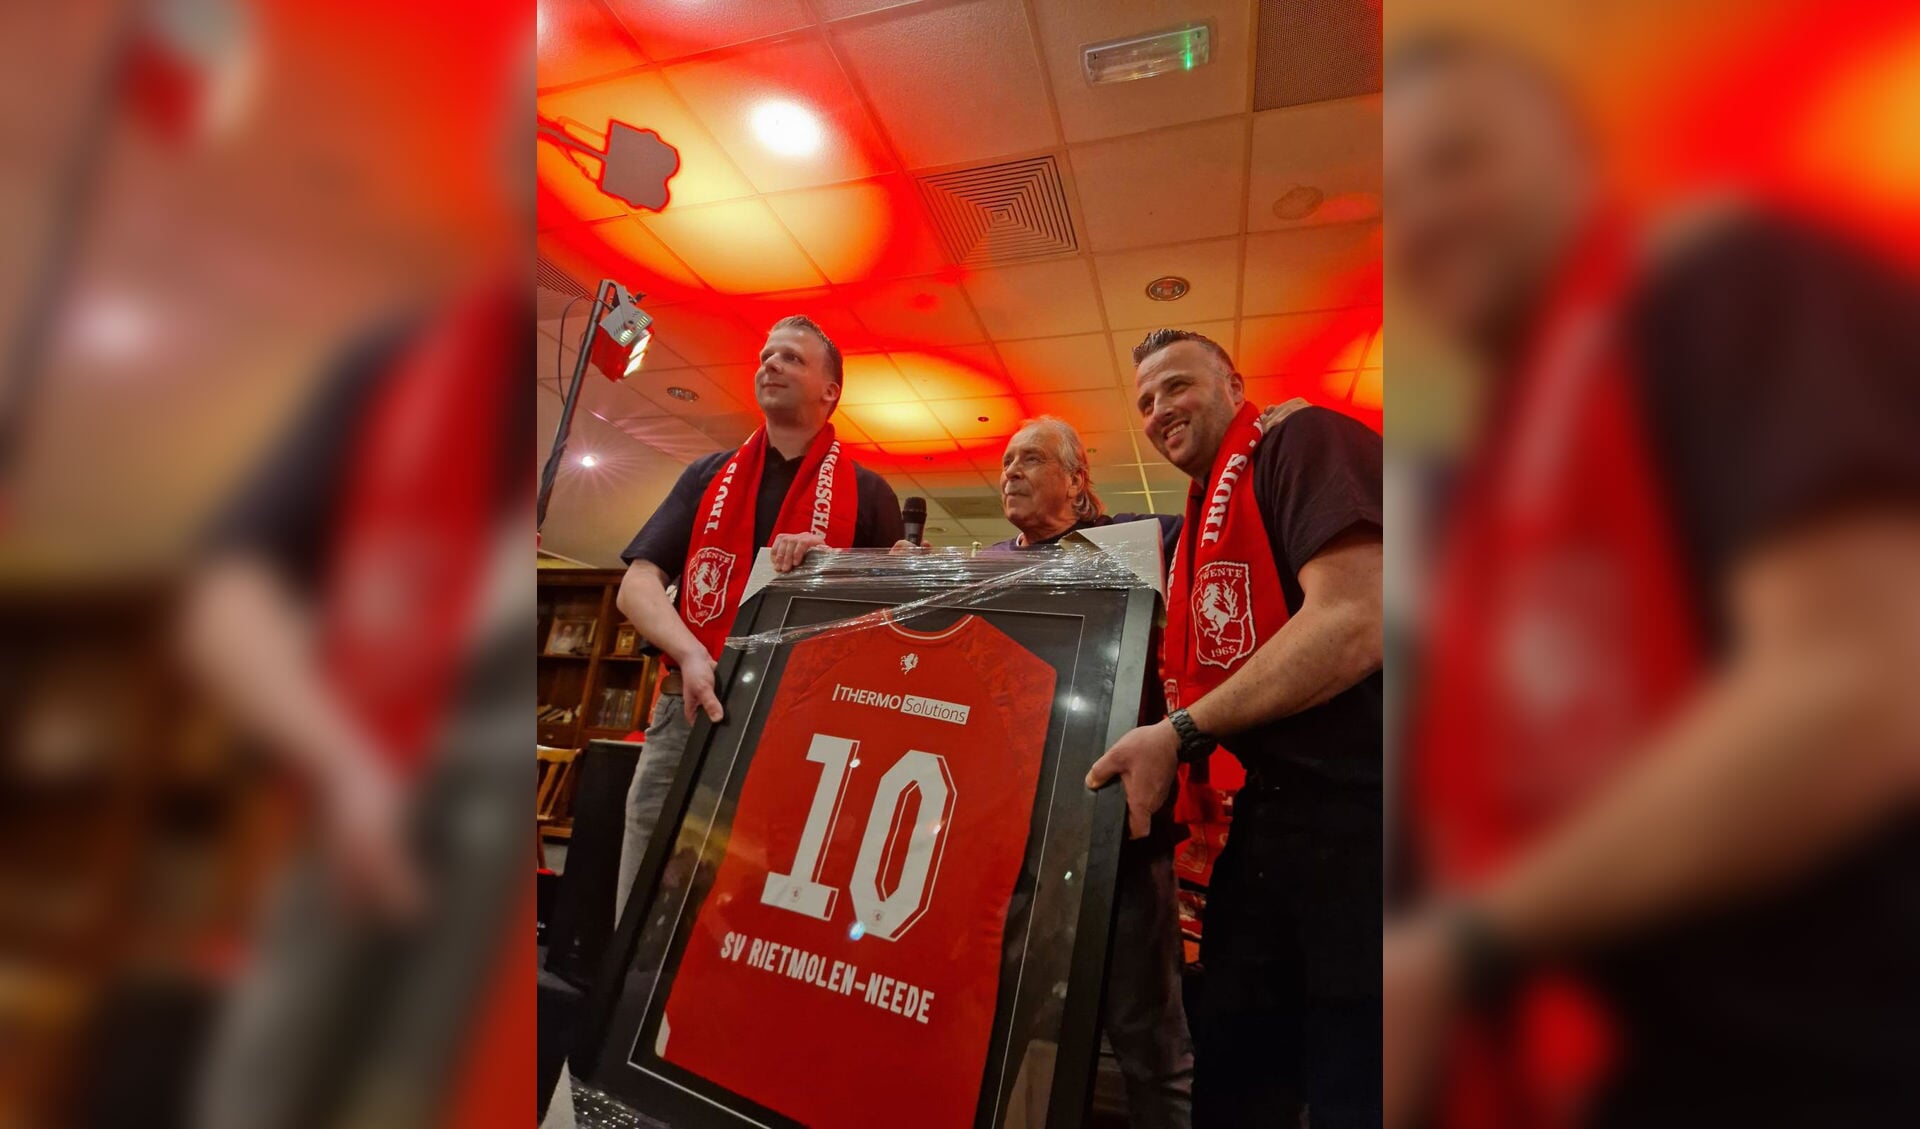 Voorzitters Rick Bolster (l) en Jordy Veldhuis met het speciale jubileumshirt van de supportersvereniging FC Twente Rietmolen/Neede. Foto: PR